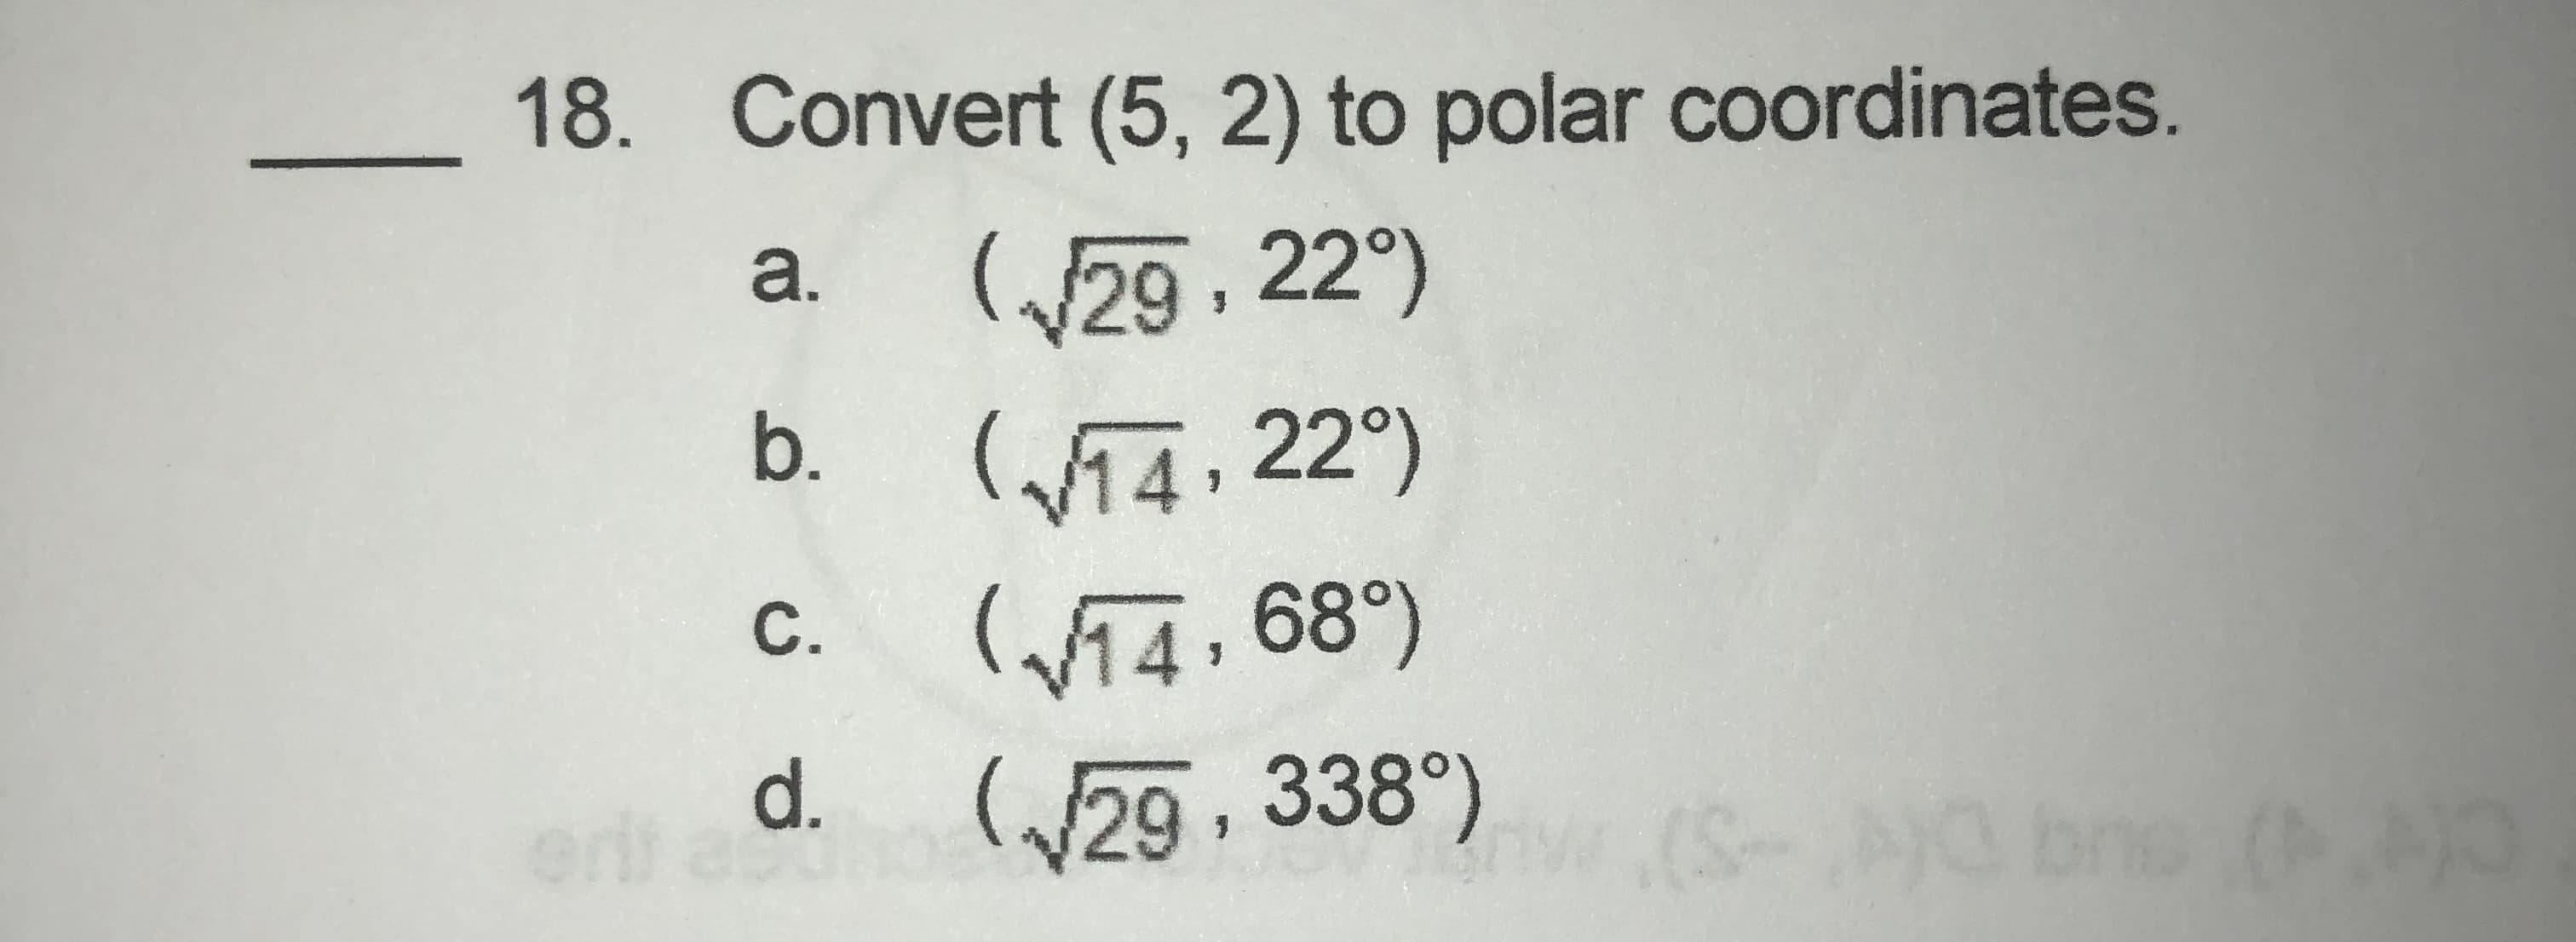 18. Convert (5, 2) to polar coordinates.
(29, 22°)
(W14, 22°)
Wi4, 68°)
(29, 338°)
a.
b.
С.
d.
(S-G br
ne
